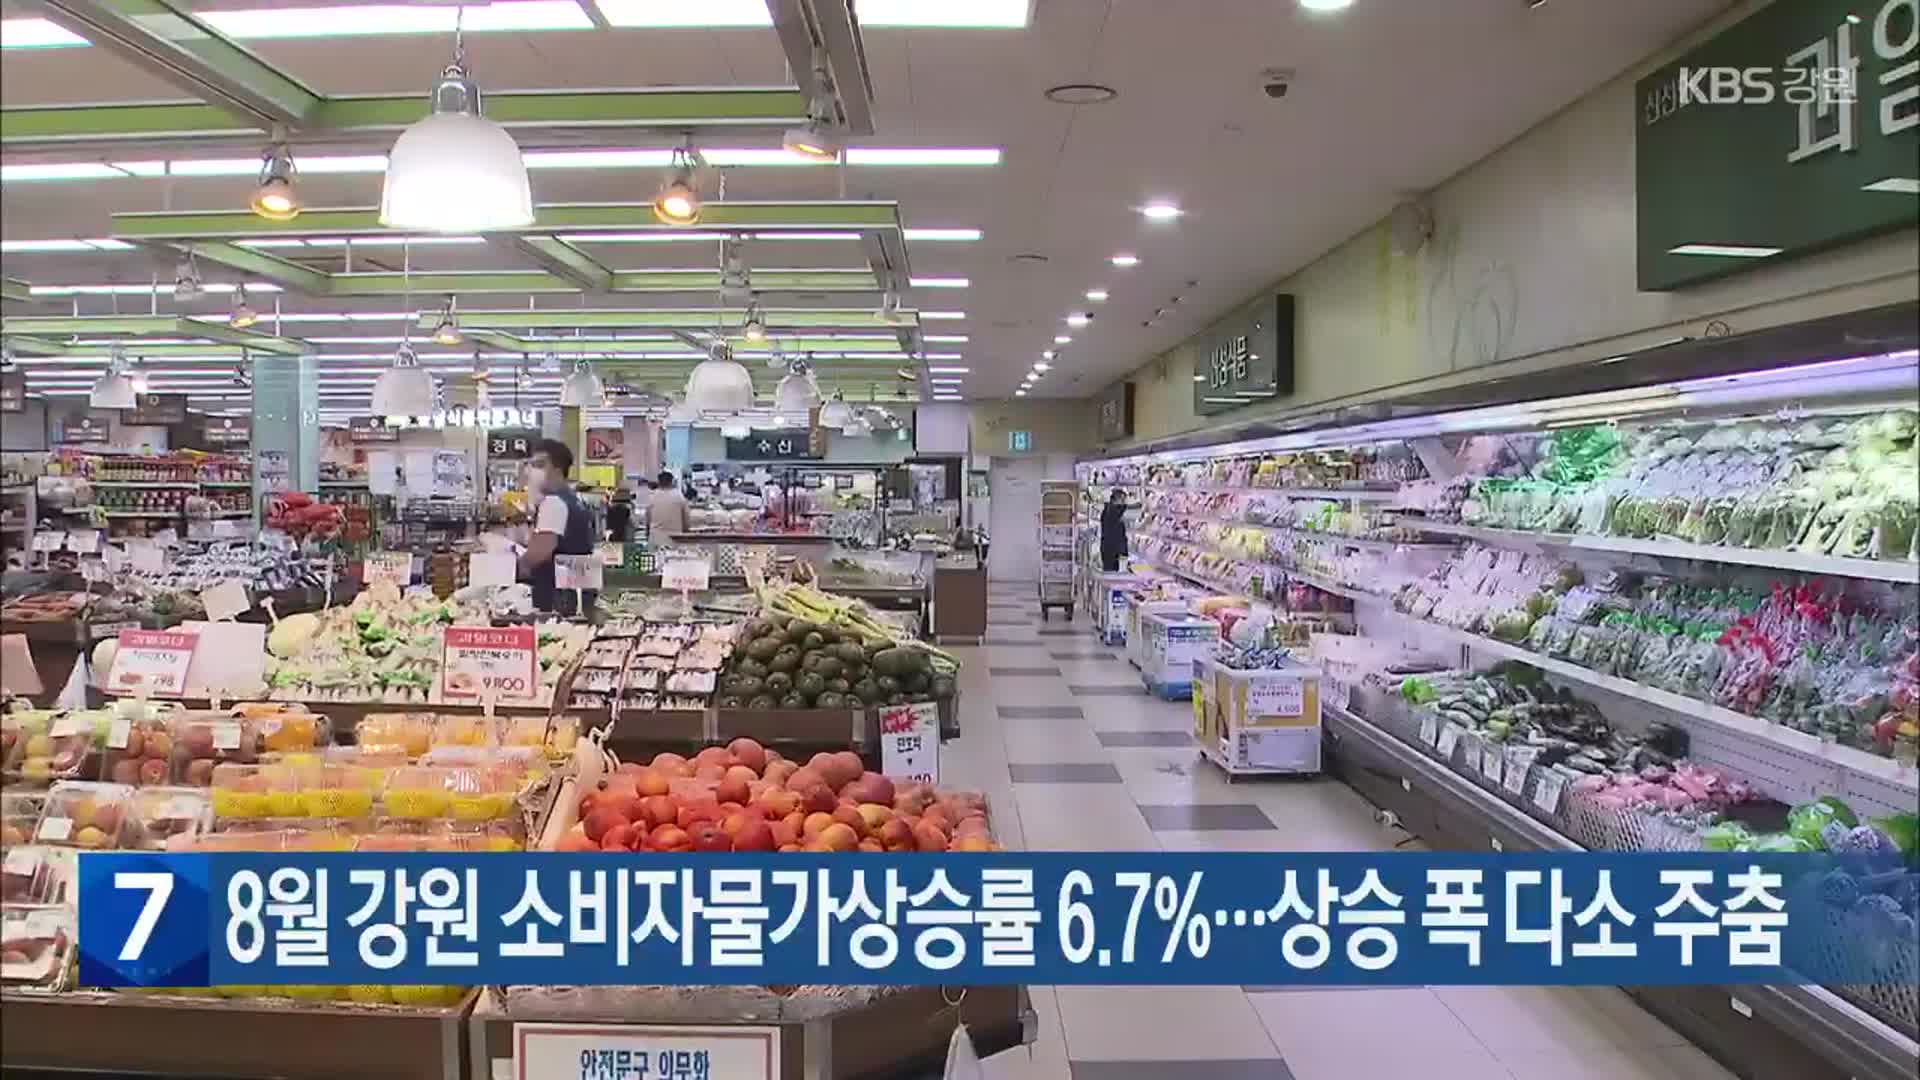 8월 강원 소비자물가상승률 6.7%…상승 폭 다소 주춤